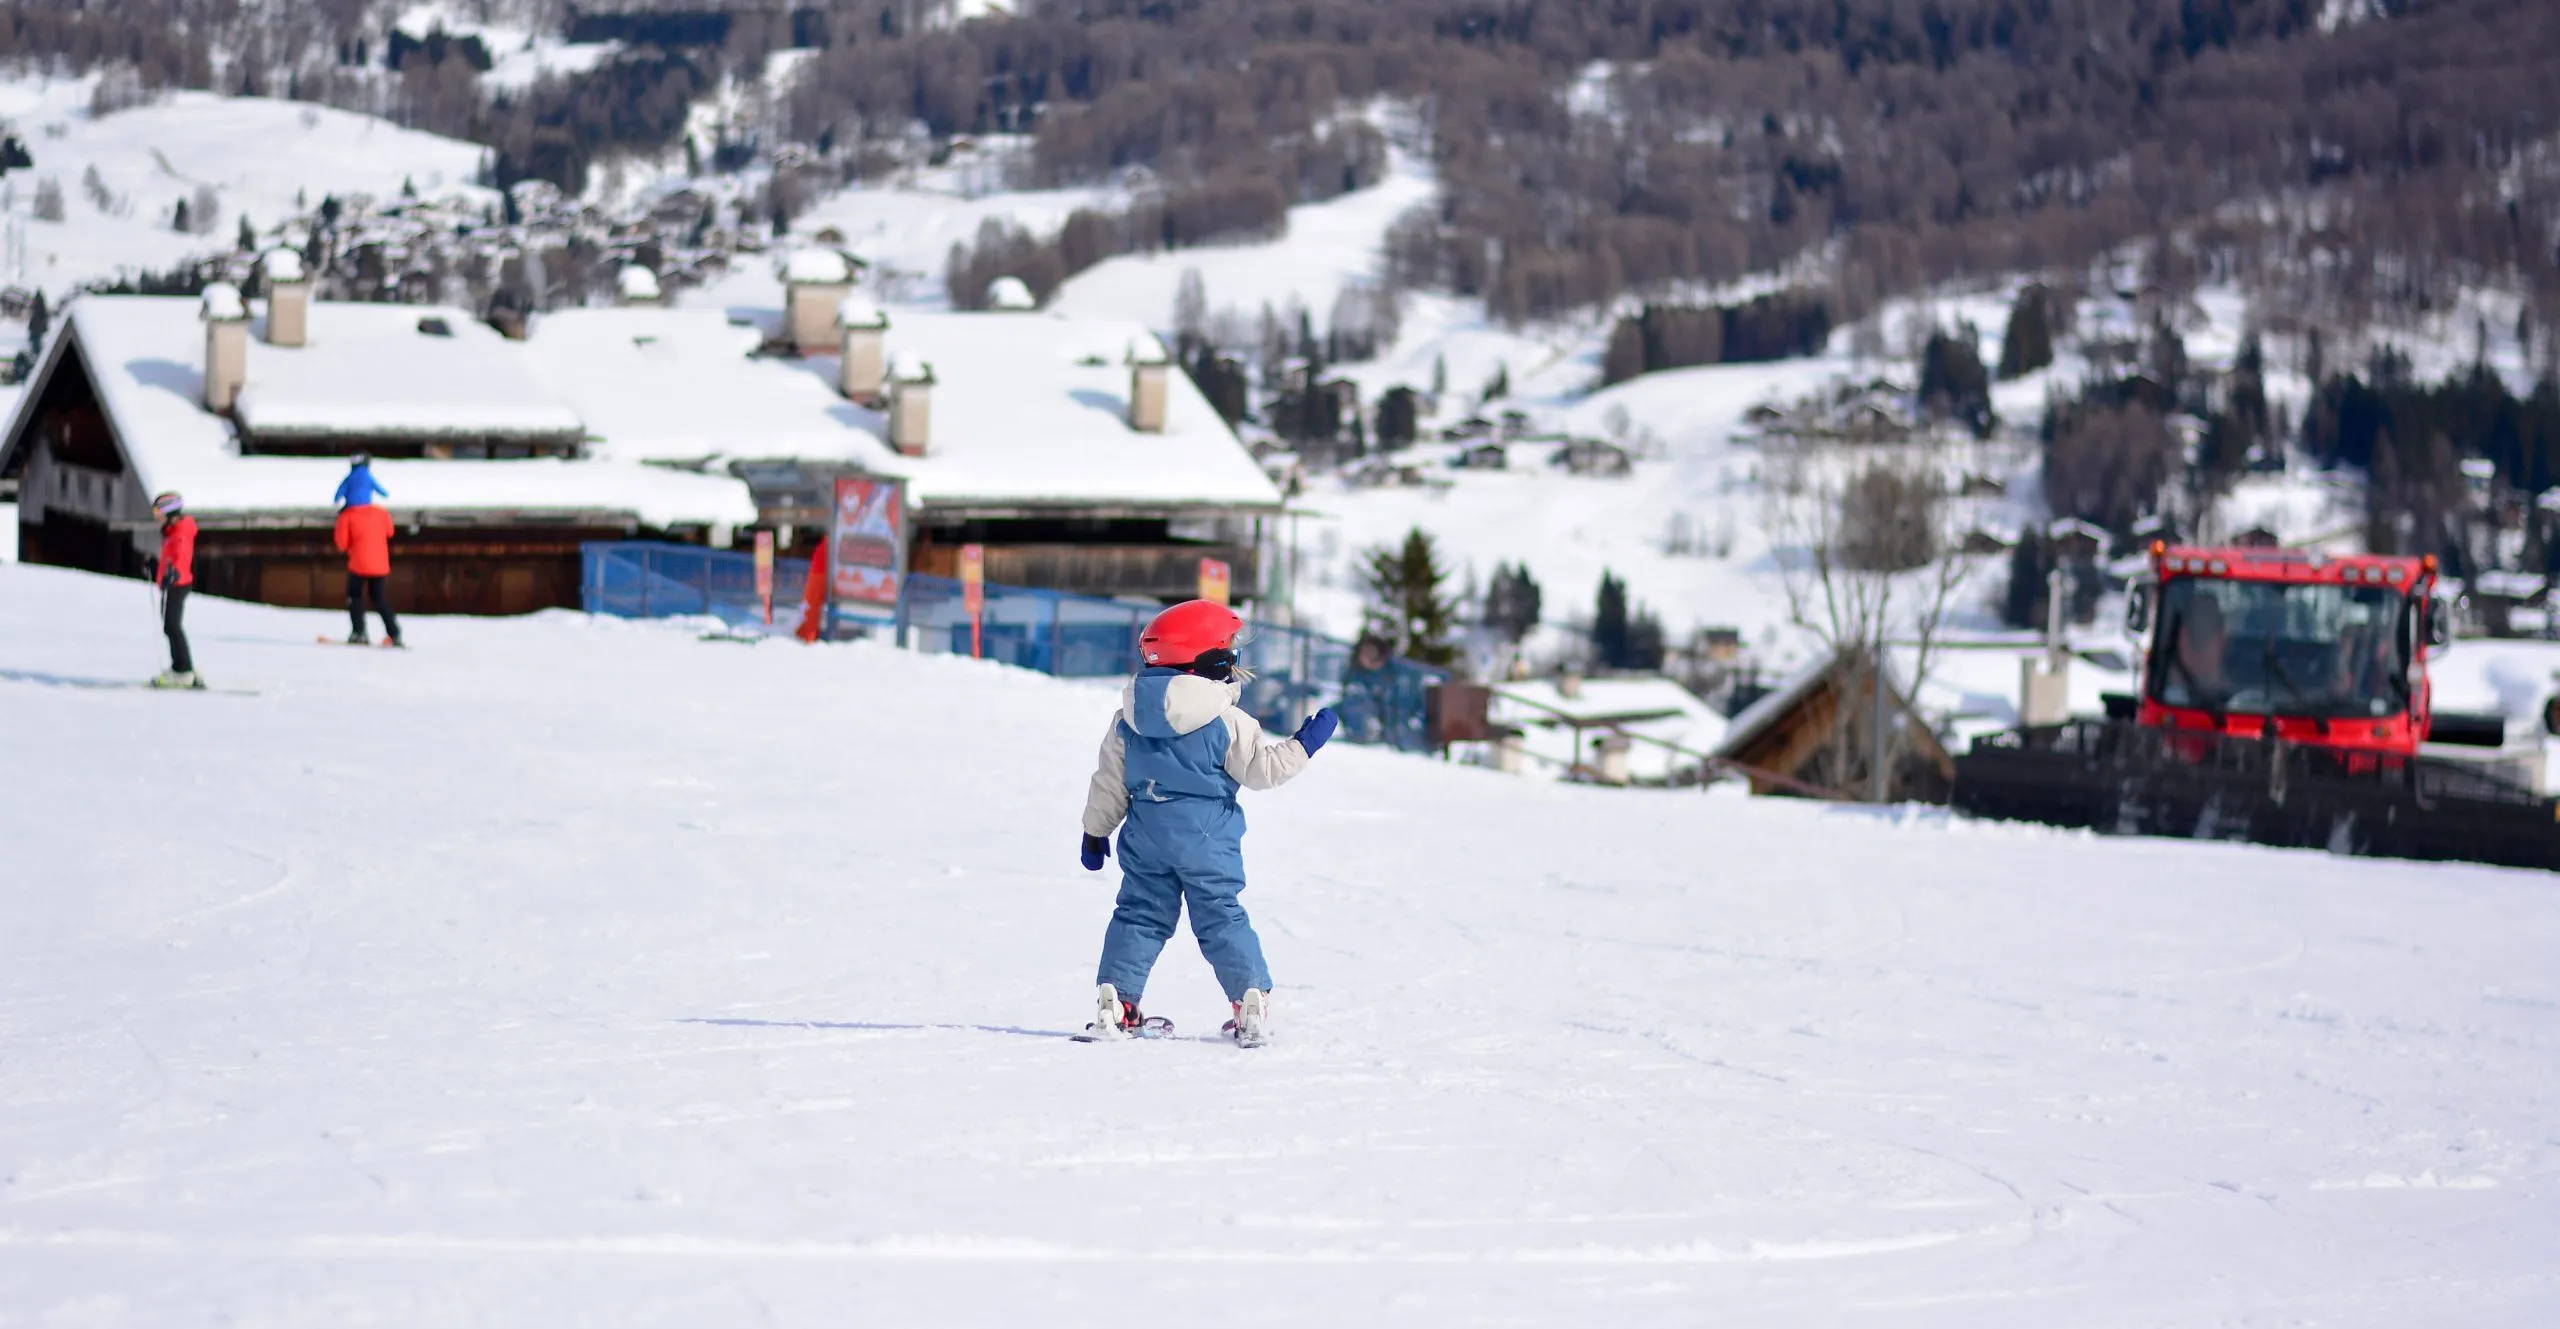 Child on skis at Kronplatz ski resort.